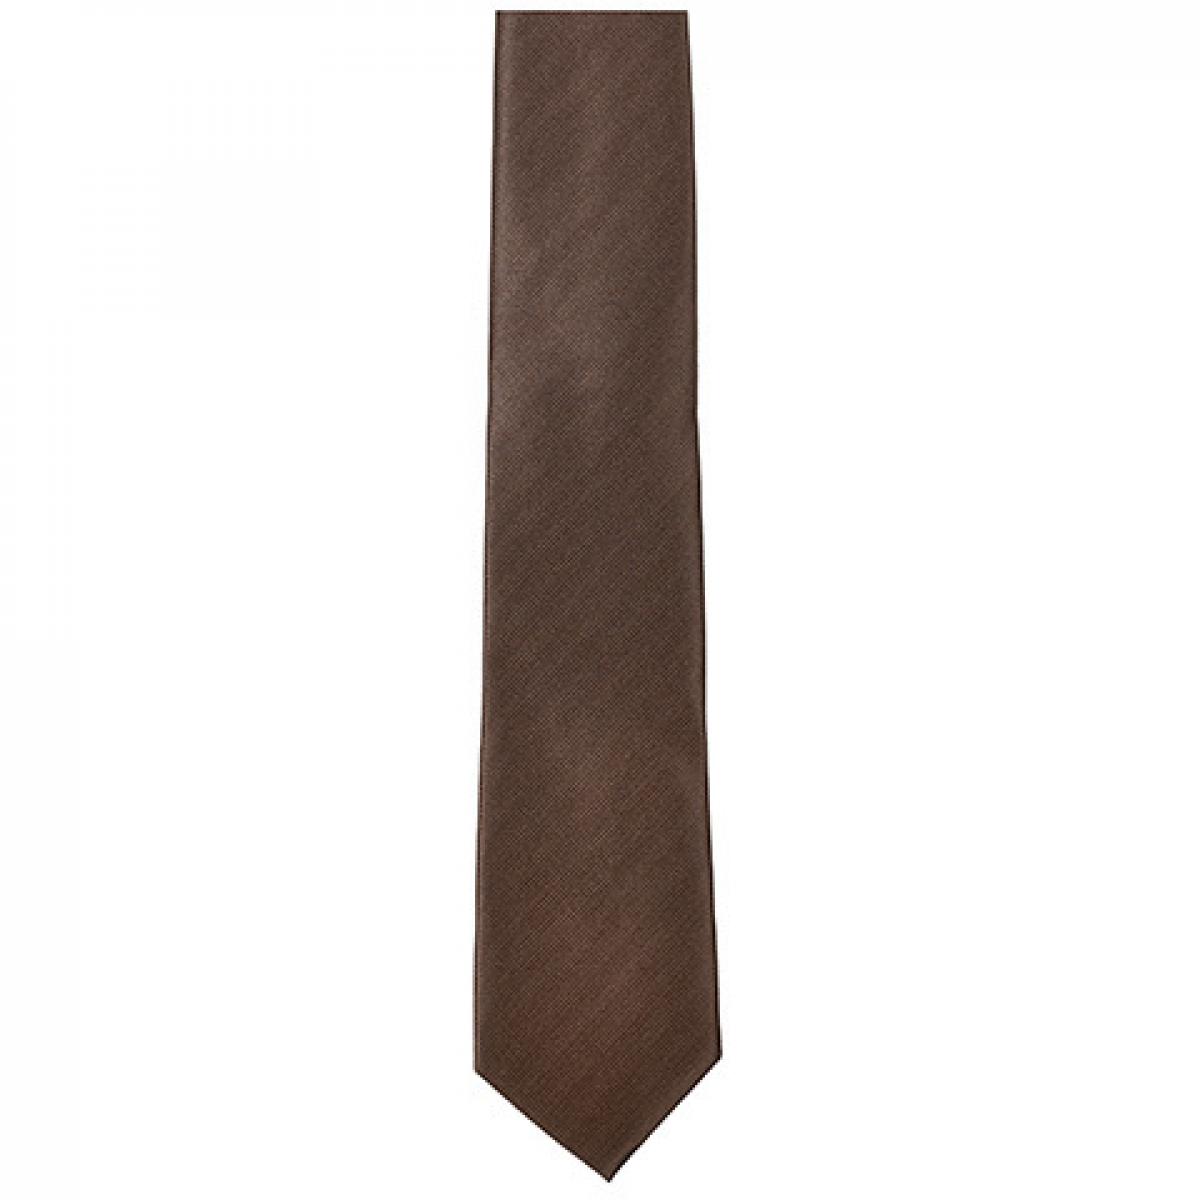 Hersteller: TYTO Herstellernummer: TT902 Artikelbezeichnung: Twill Tie / 144 x 8,5cm Farbe: Brown